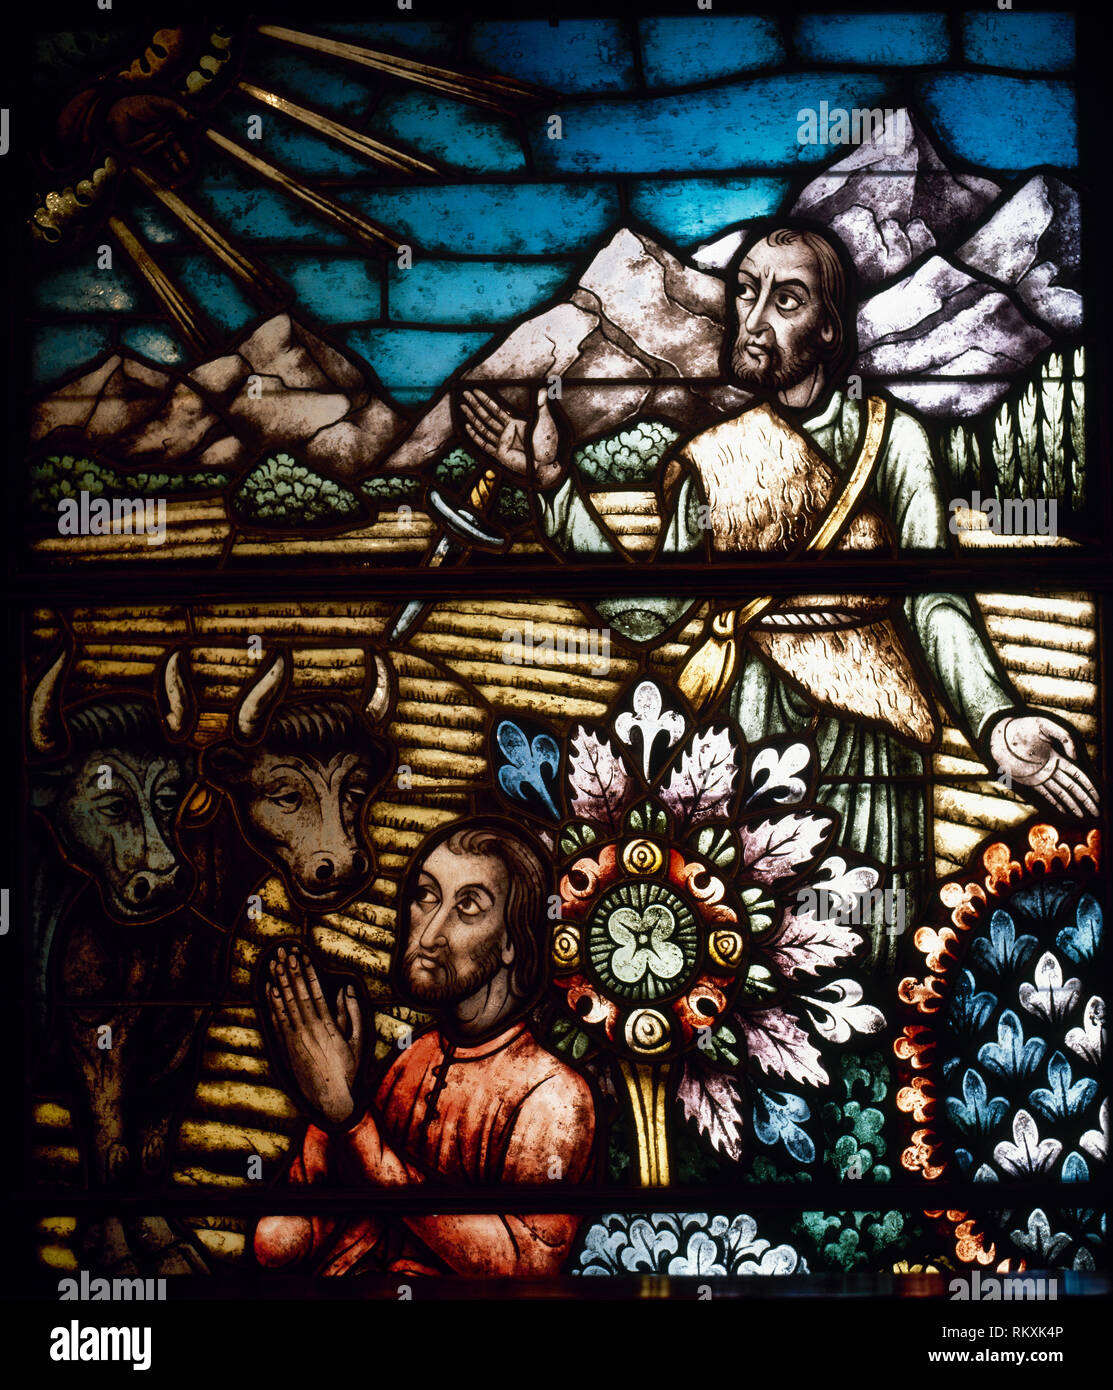 Spanien, La Rioja, Anguiano. Kloster Unserer Lieben Frau von Valvanera. 15. und 16. Jahrhunderts. Glasfenster mit der Darstellung eines Feldes arbeiten. Stockfoto